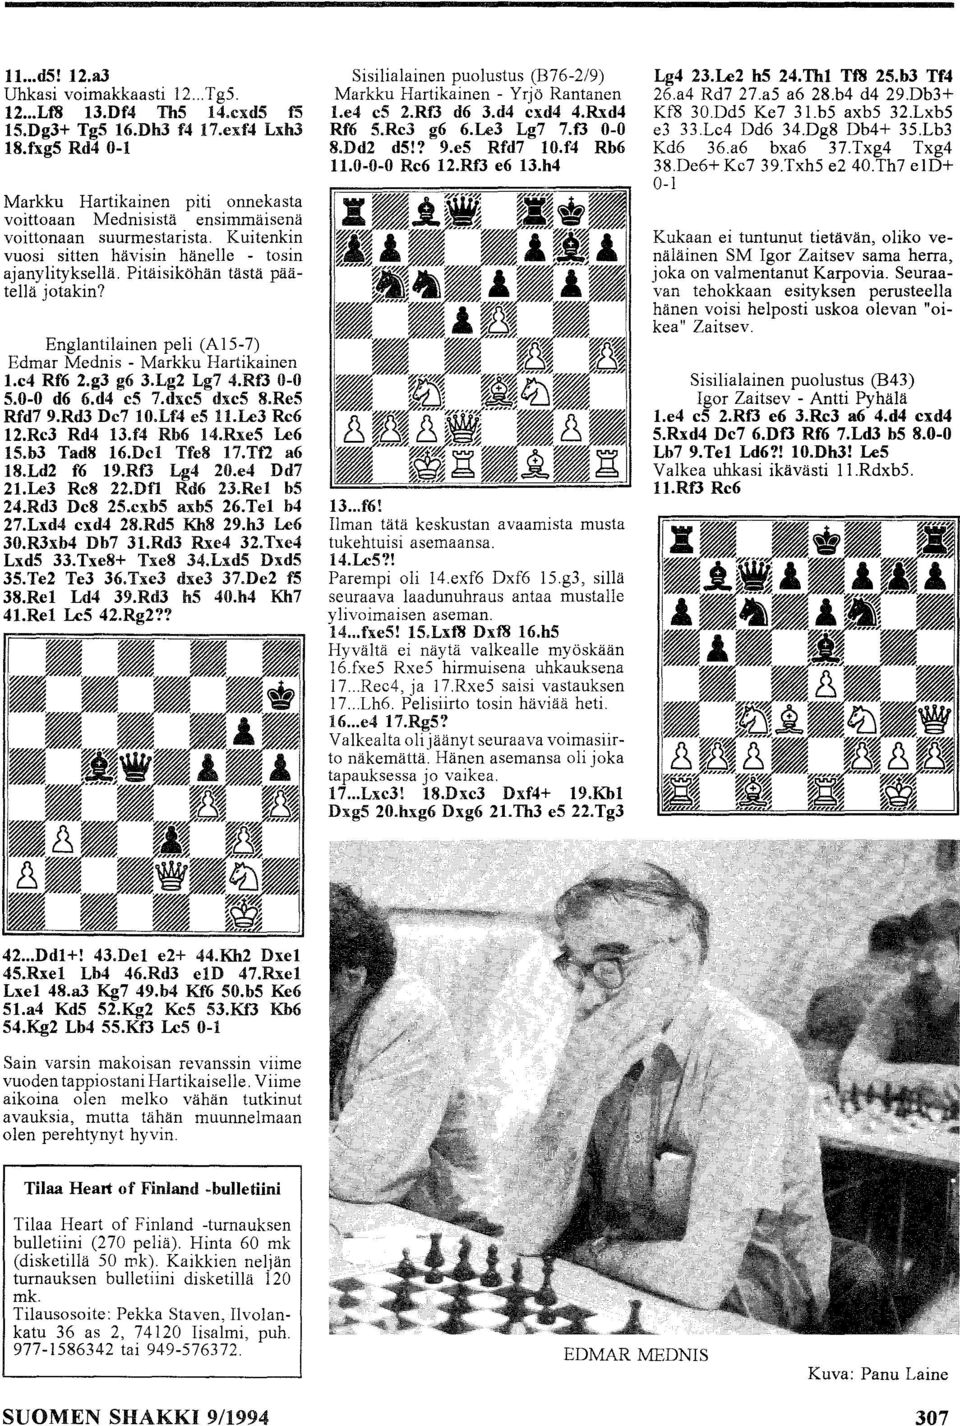 Pitäisiköhän tästä päätellä jotakin? Englantilainen peli (A 15-7) Edmar Mednis - Markku Hartikainen 1.e4 Rf6 2.g3 g6 3.Lg2 Lg7 4.RfJ 0-0 5.0-0 d6 6.d4 e5 7.dxe5 dxe5 8.Re5 Rfd7 9.Rd3 De7 W.Lf4 es 11.